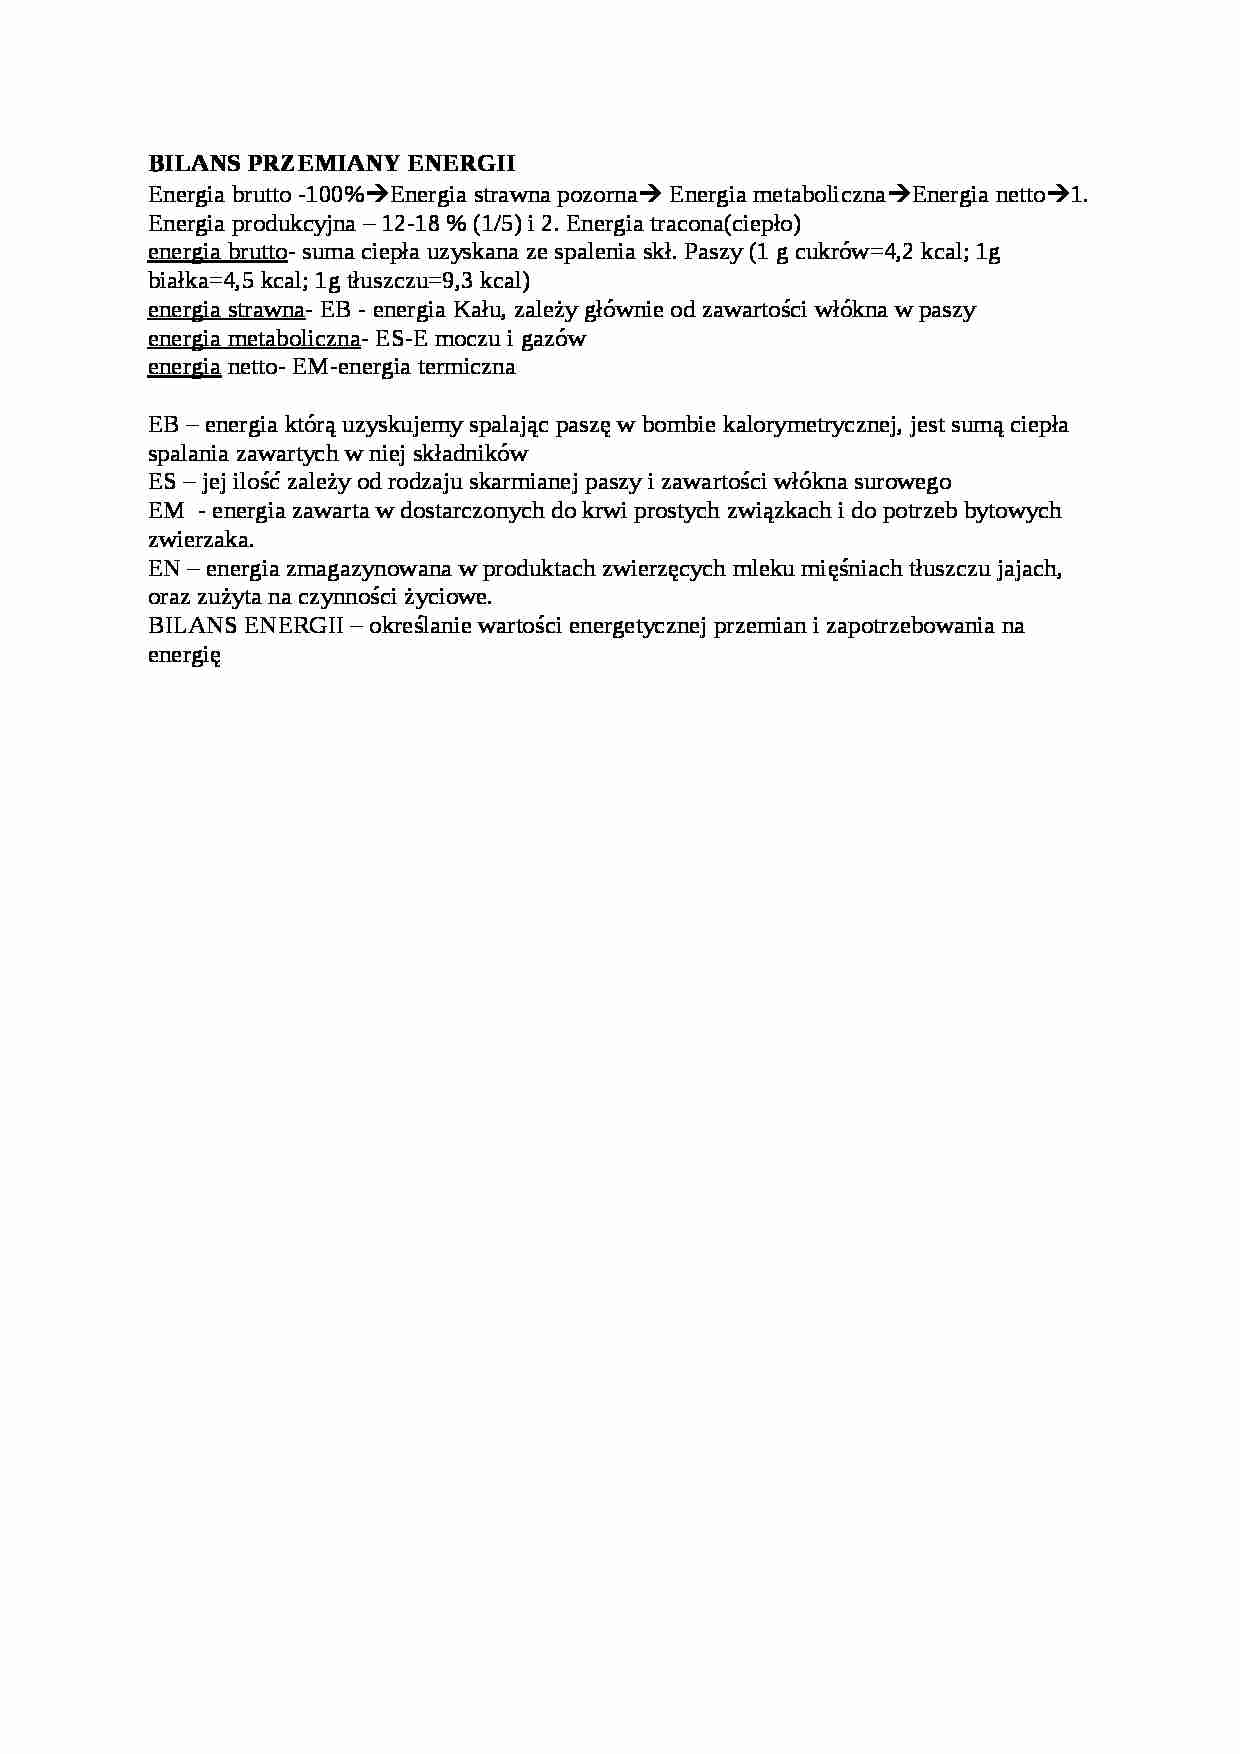 Trawienie poligastryczne- bilans przemiany energii - wykład, sem IV - strona 1